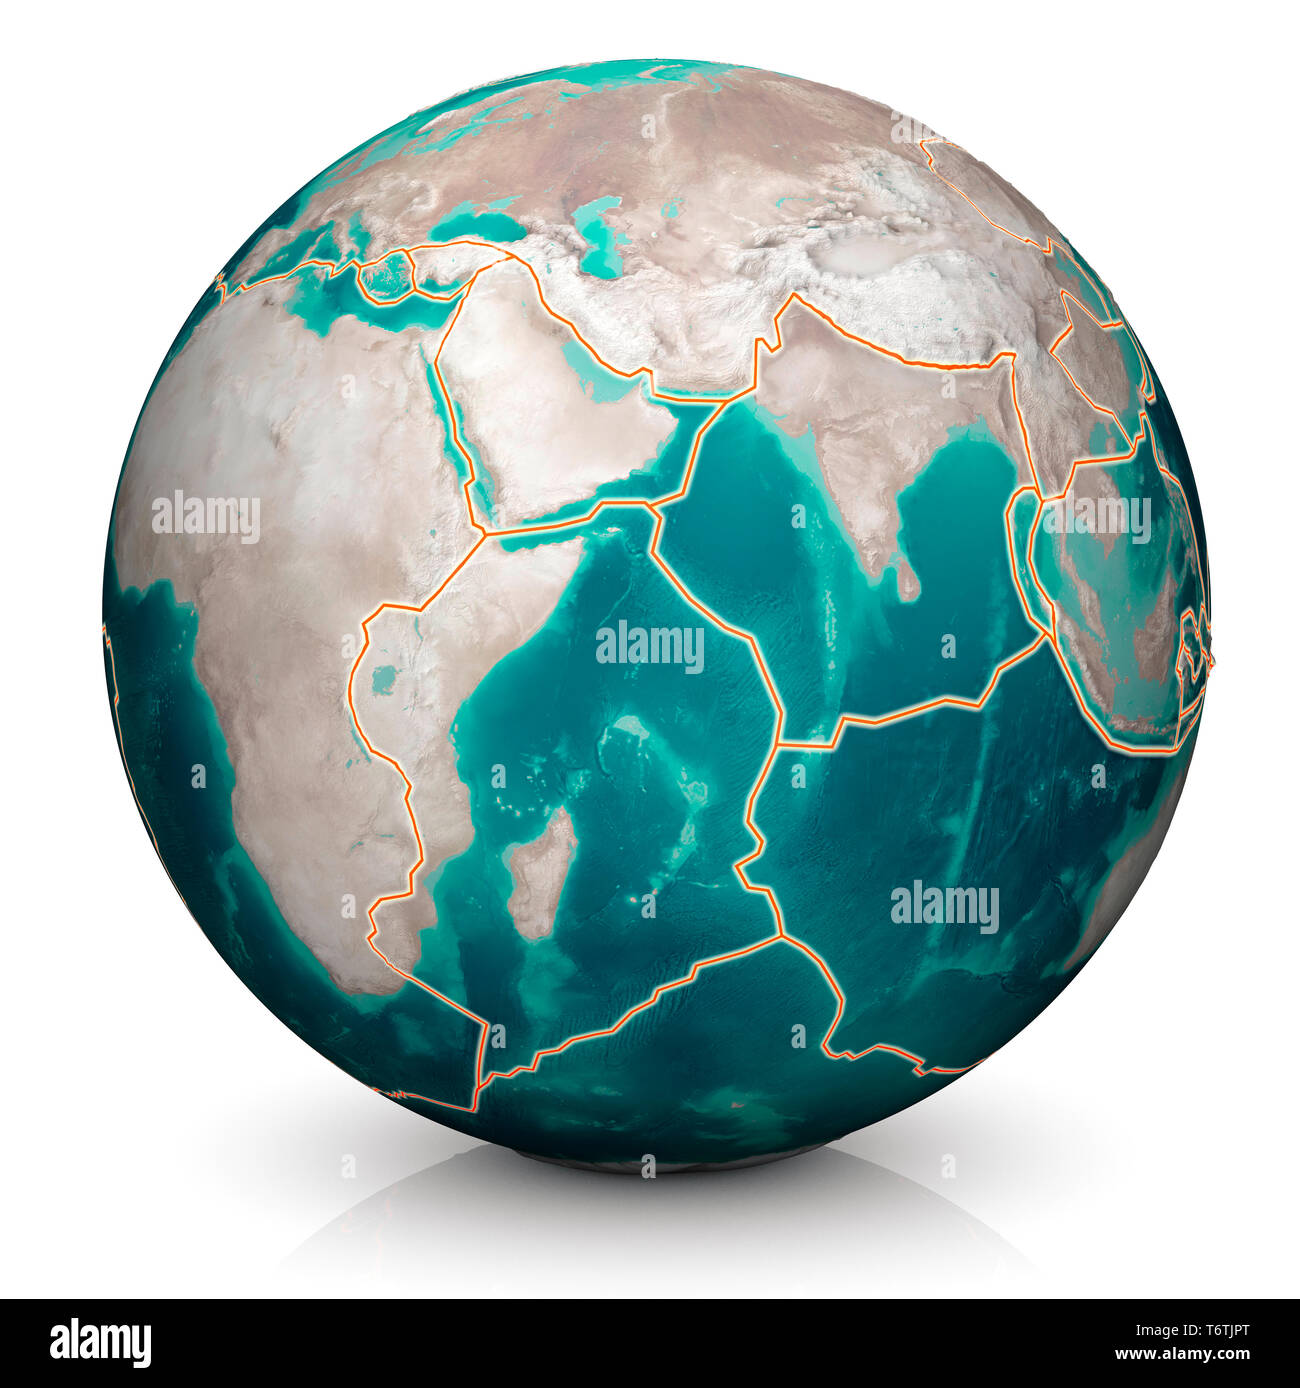 Tektonische Platten bewegen sich ständig, neue Bereiche der Meeresboden, Gebäude, Berge, Erdbeben und Vulkane zu schaffen. Karte. Stockfoto